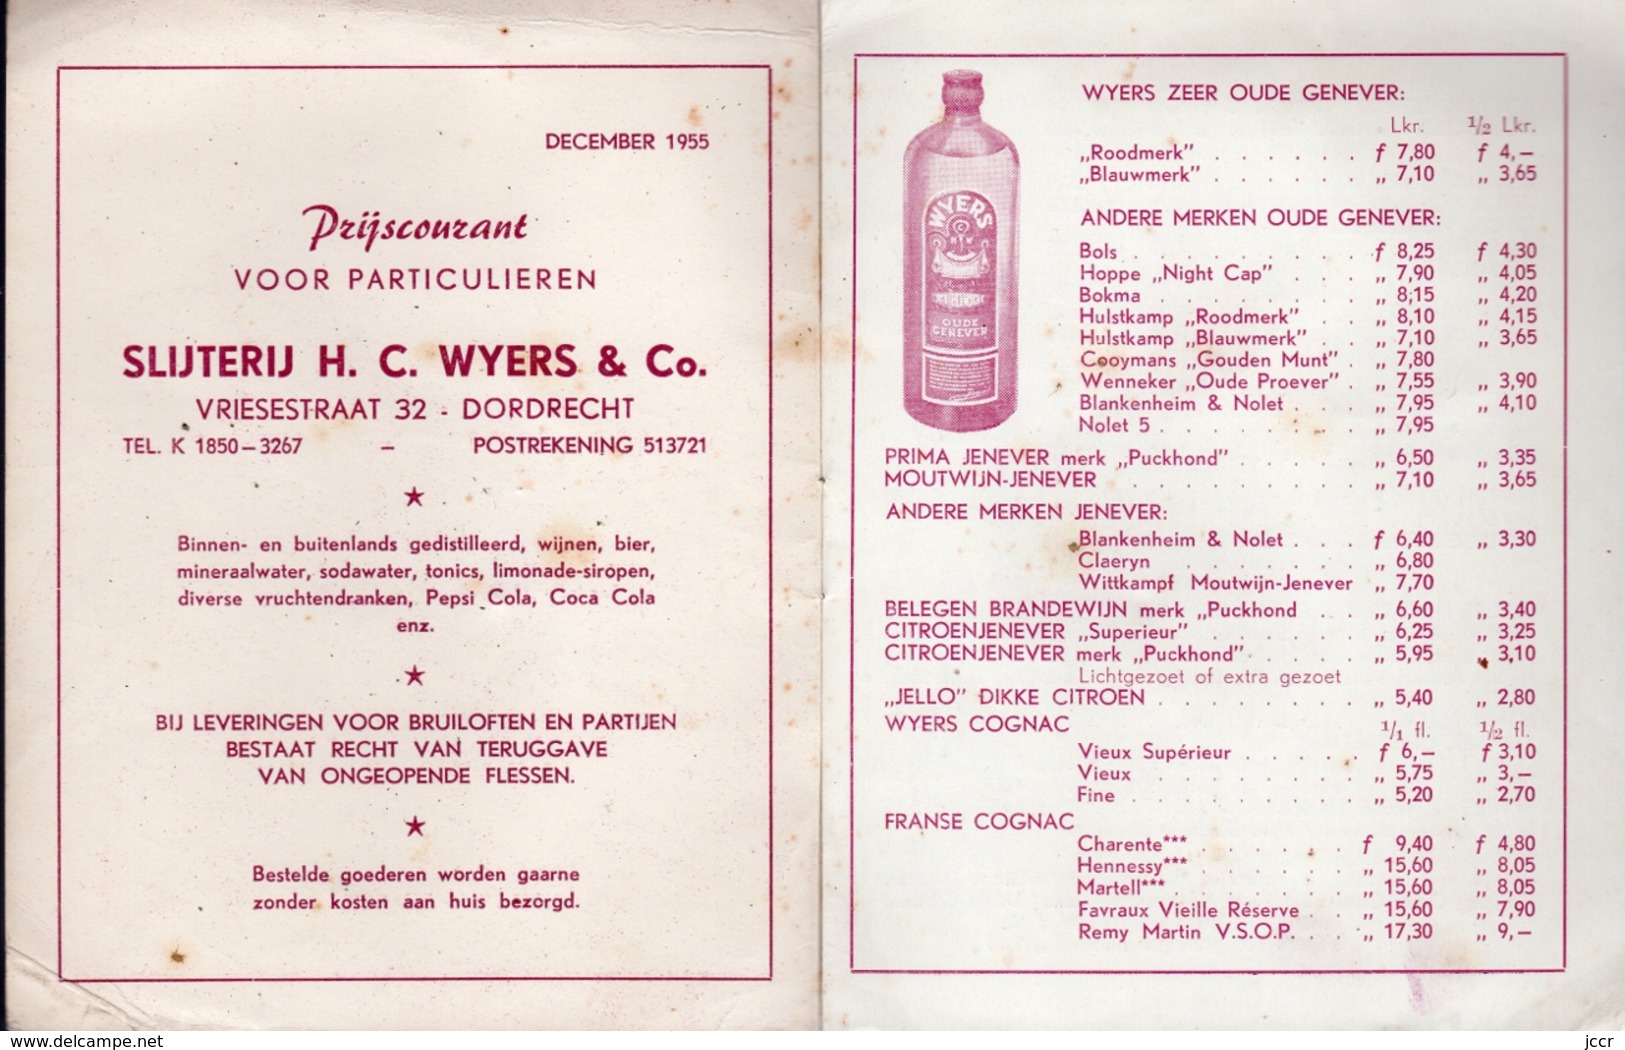 Slijterij H. C. Wyers & Co. Vriesestraat 32 - Dordrecht (Pays-Bas) - Prijscourant Vor Particulieren - December 1955 - Koken & Wijn